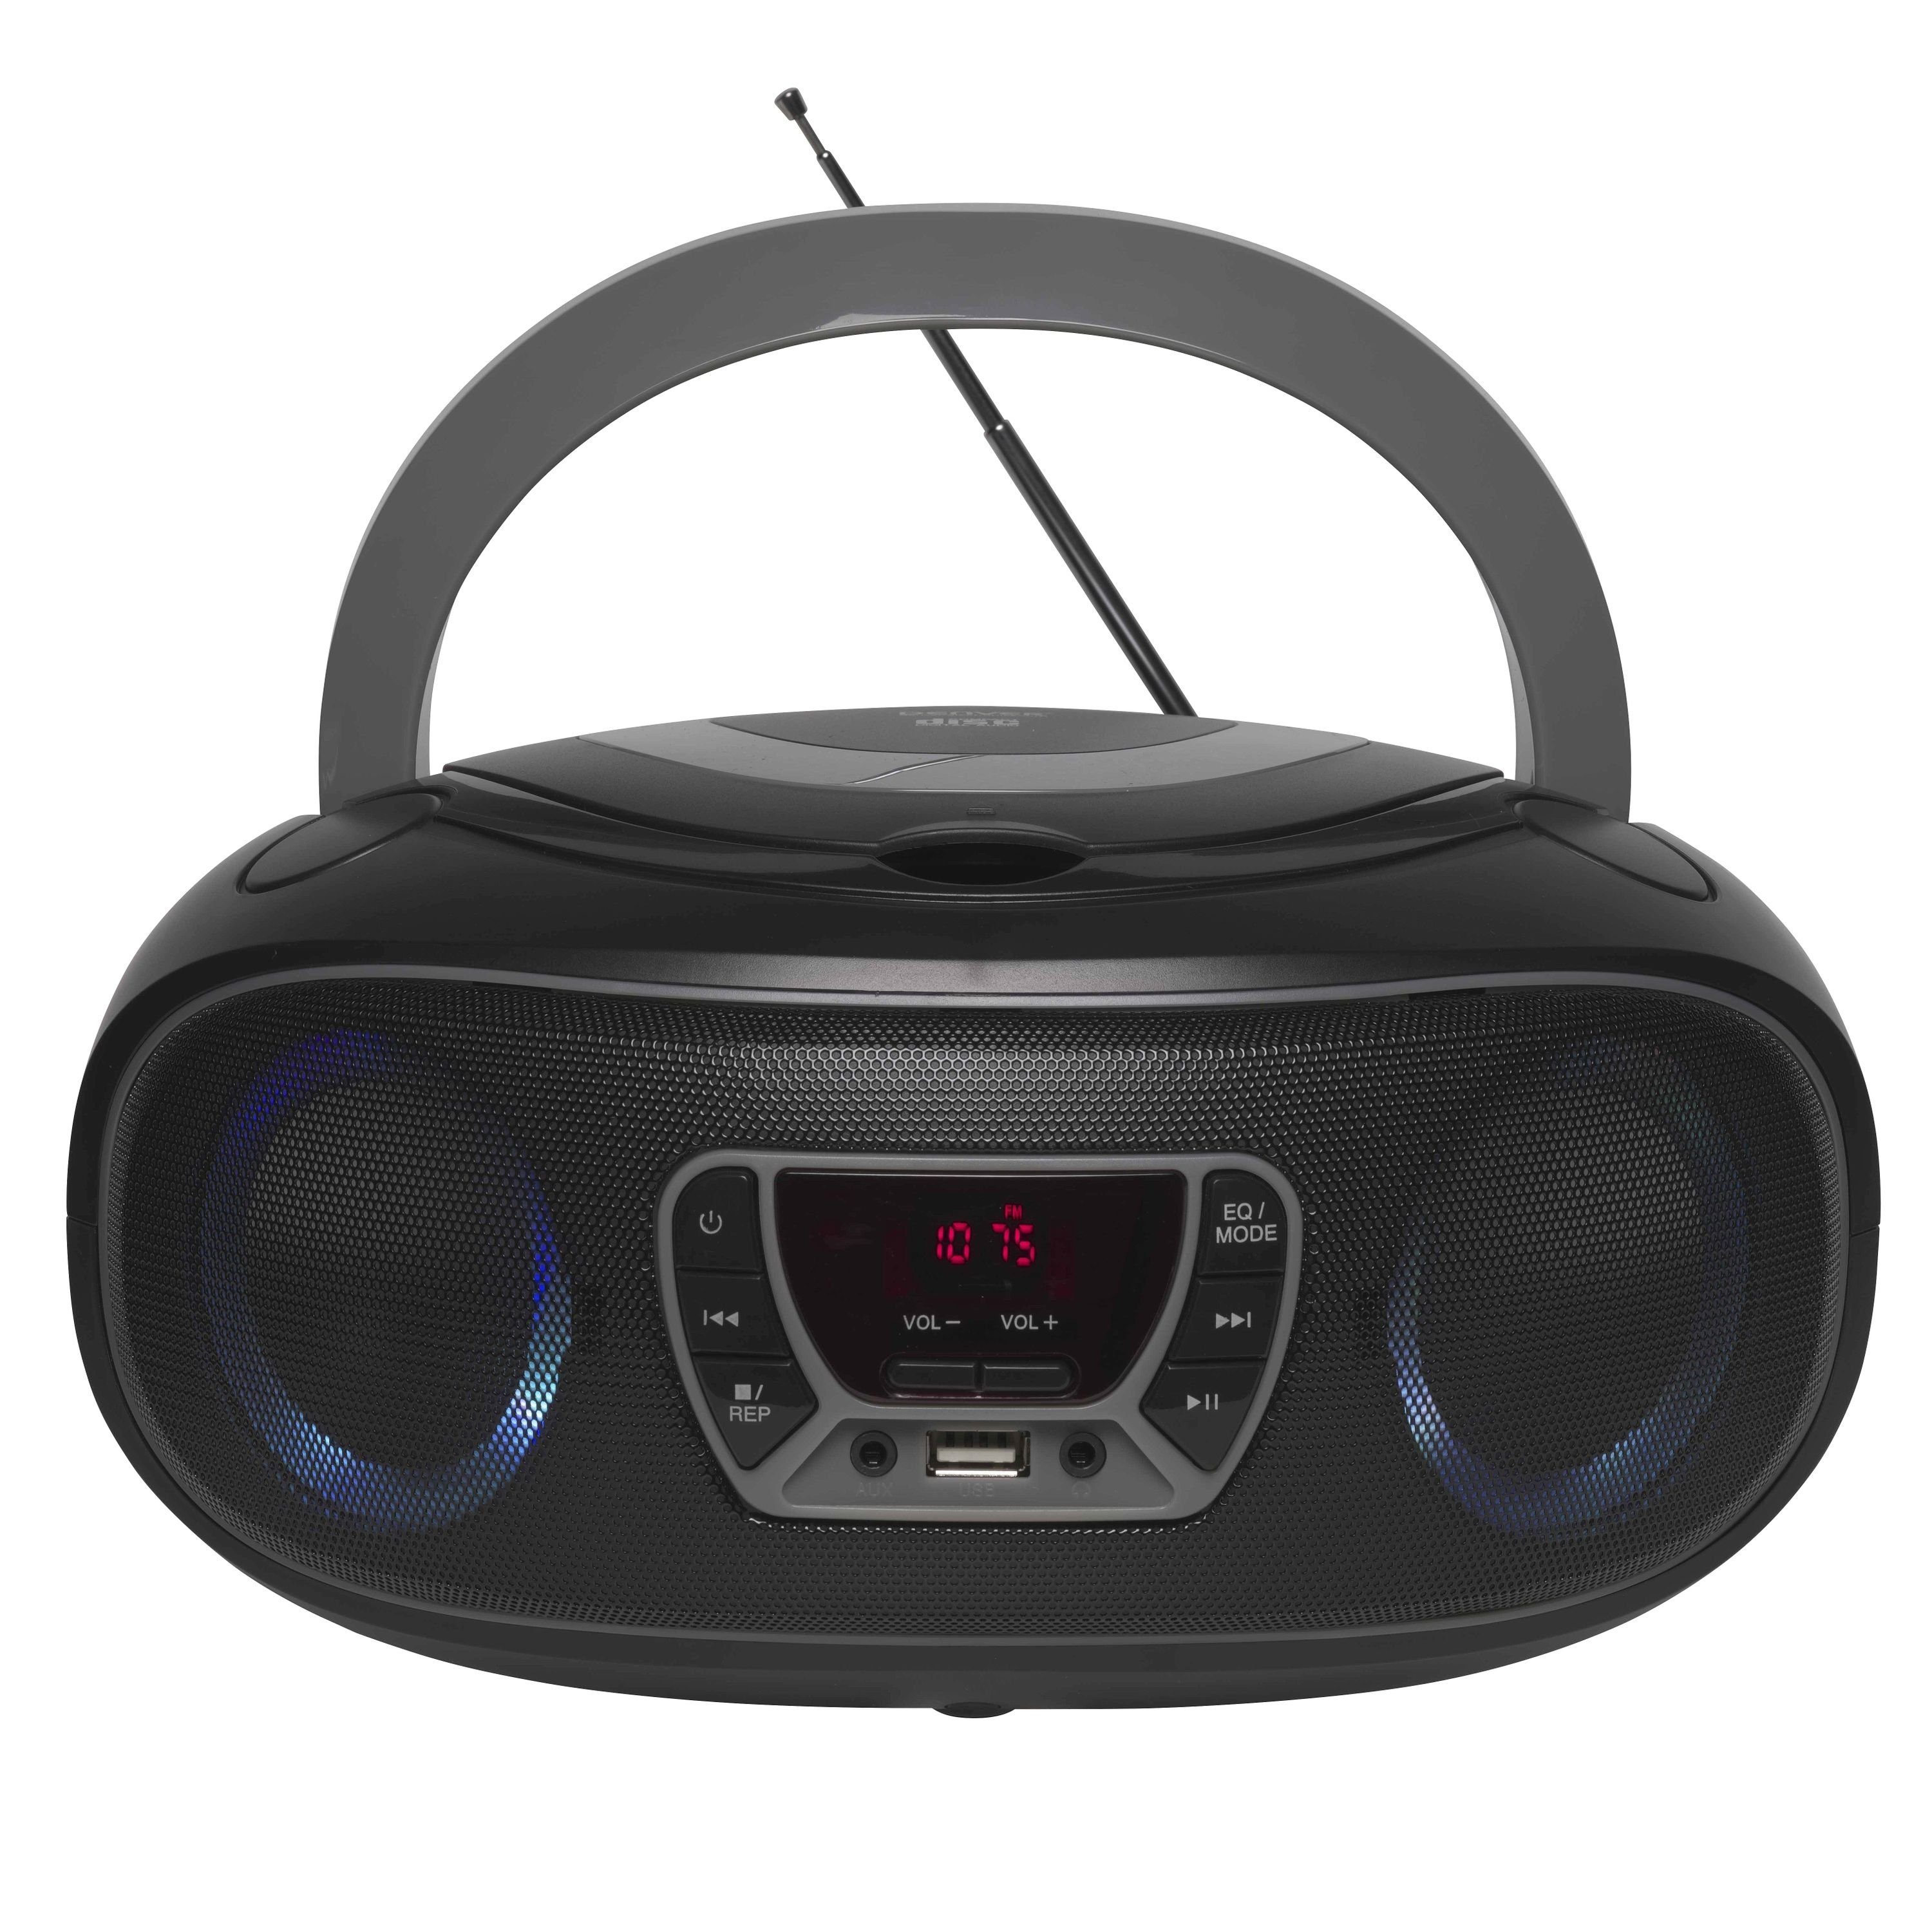 Denver TCL-212BT GREY Boombox (UKW Radio, Bluetooth, USB, AUX-IN, Kopfhörerausgang und LED Partylicht)